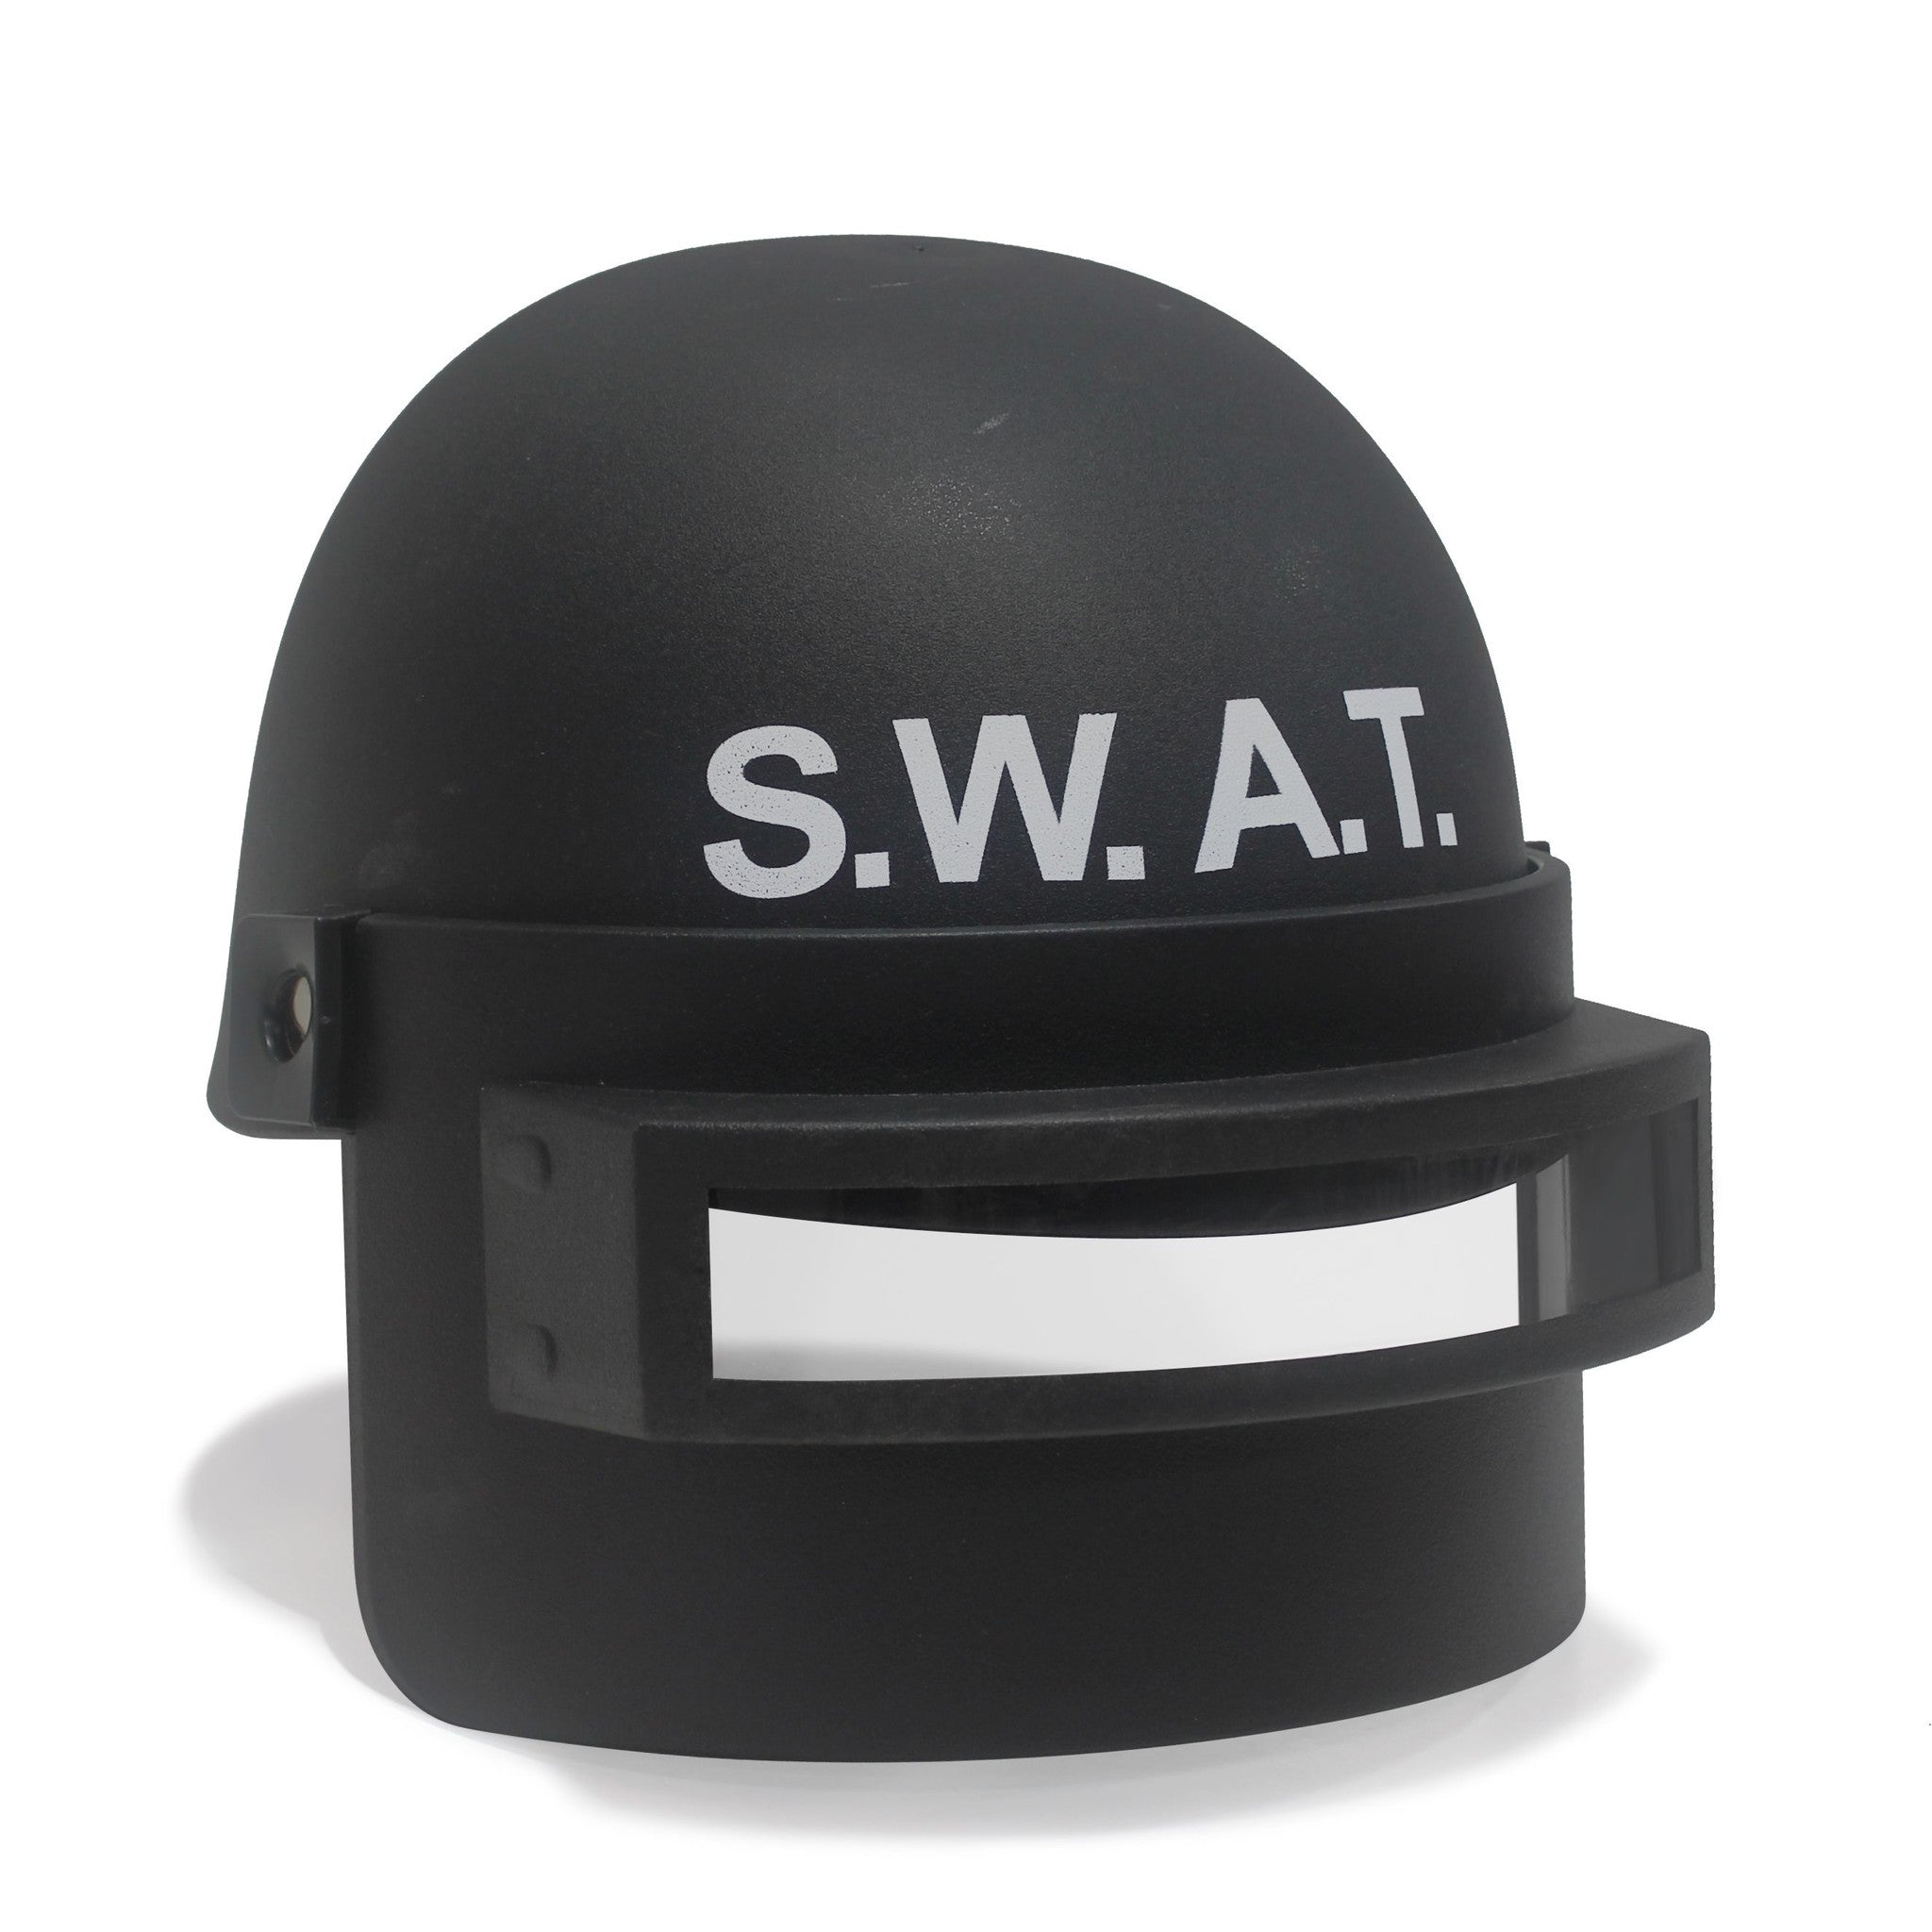 Mooie SWAT helm voor volwassenen